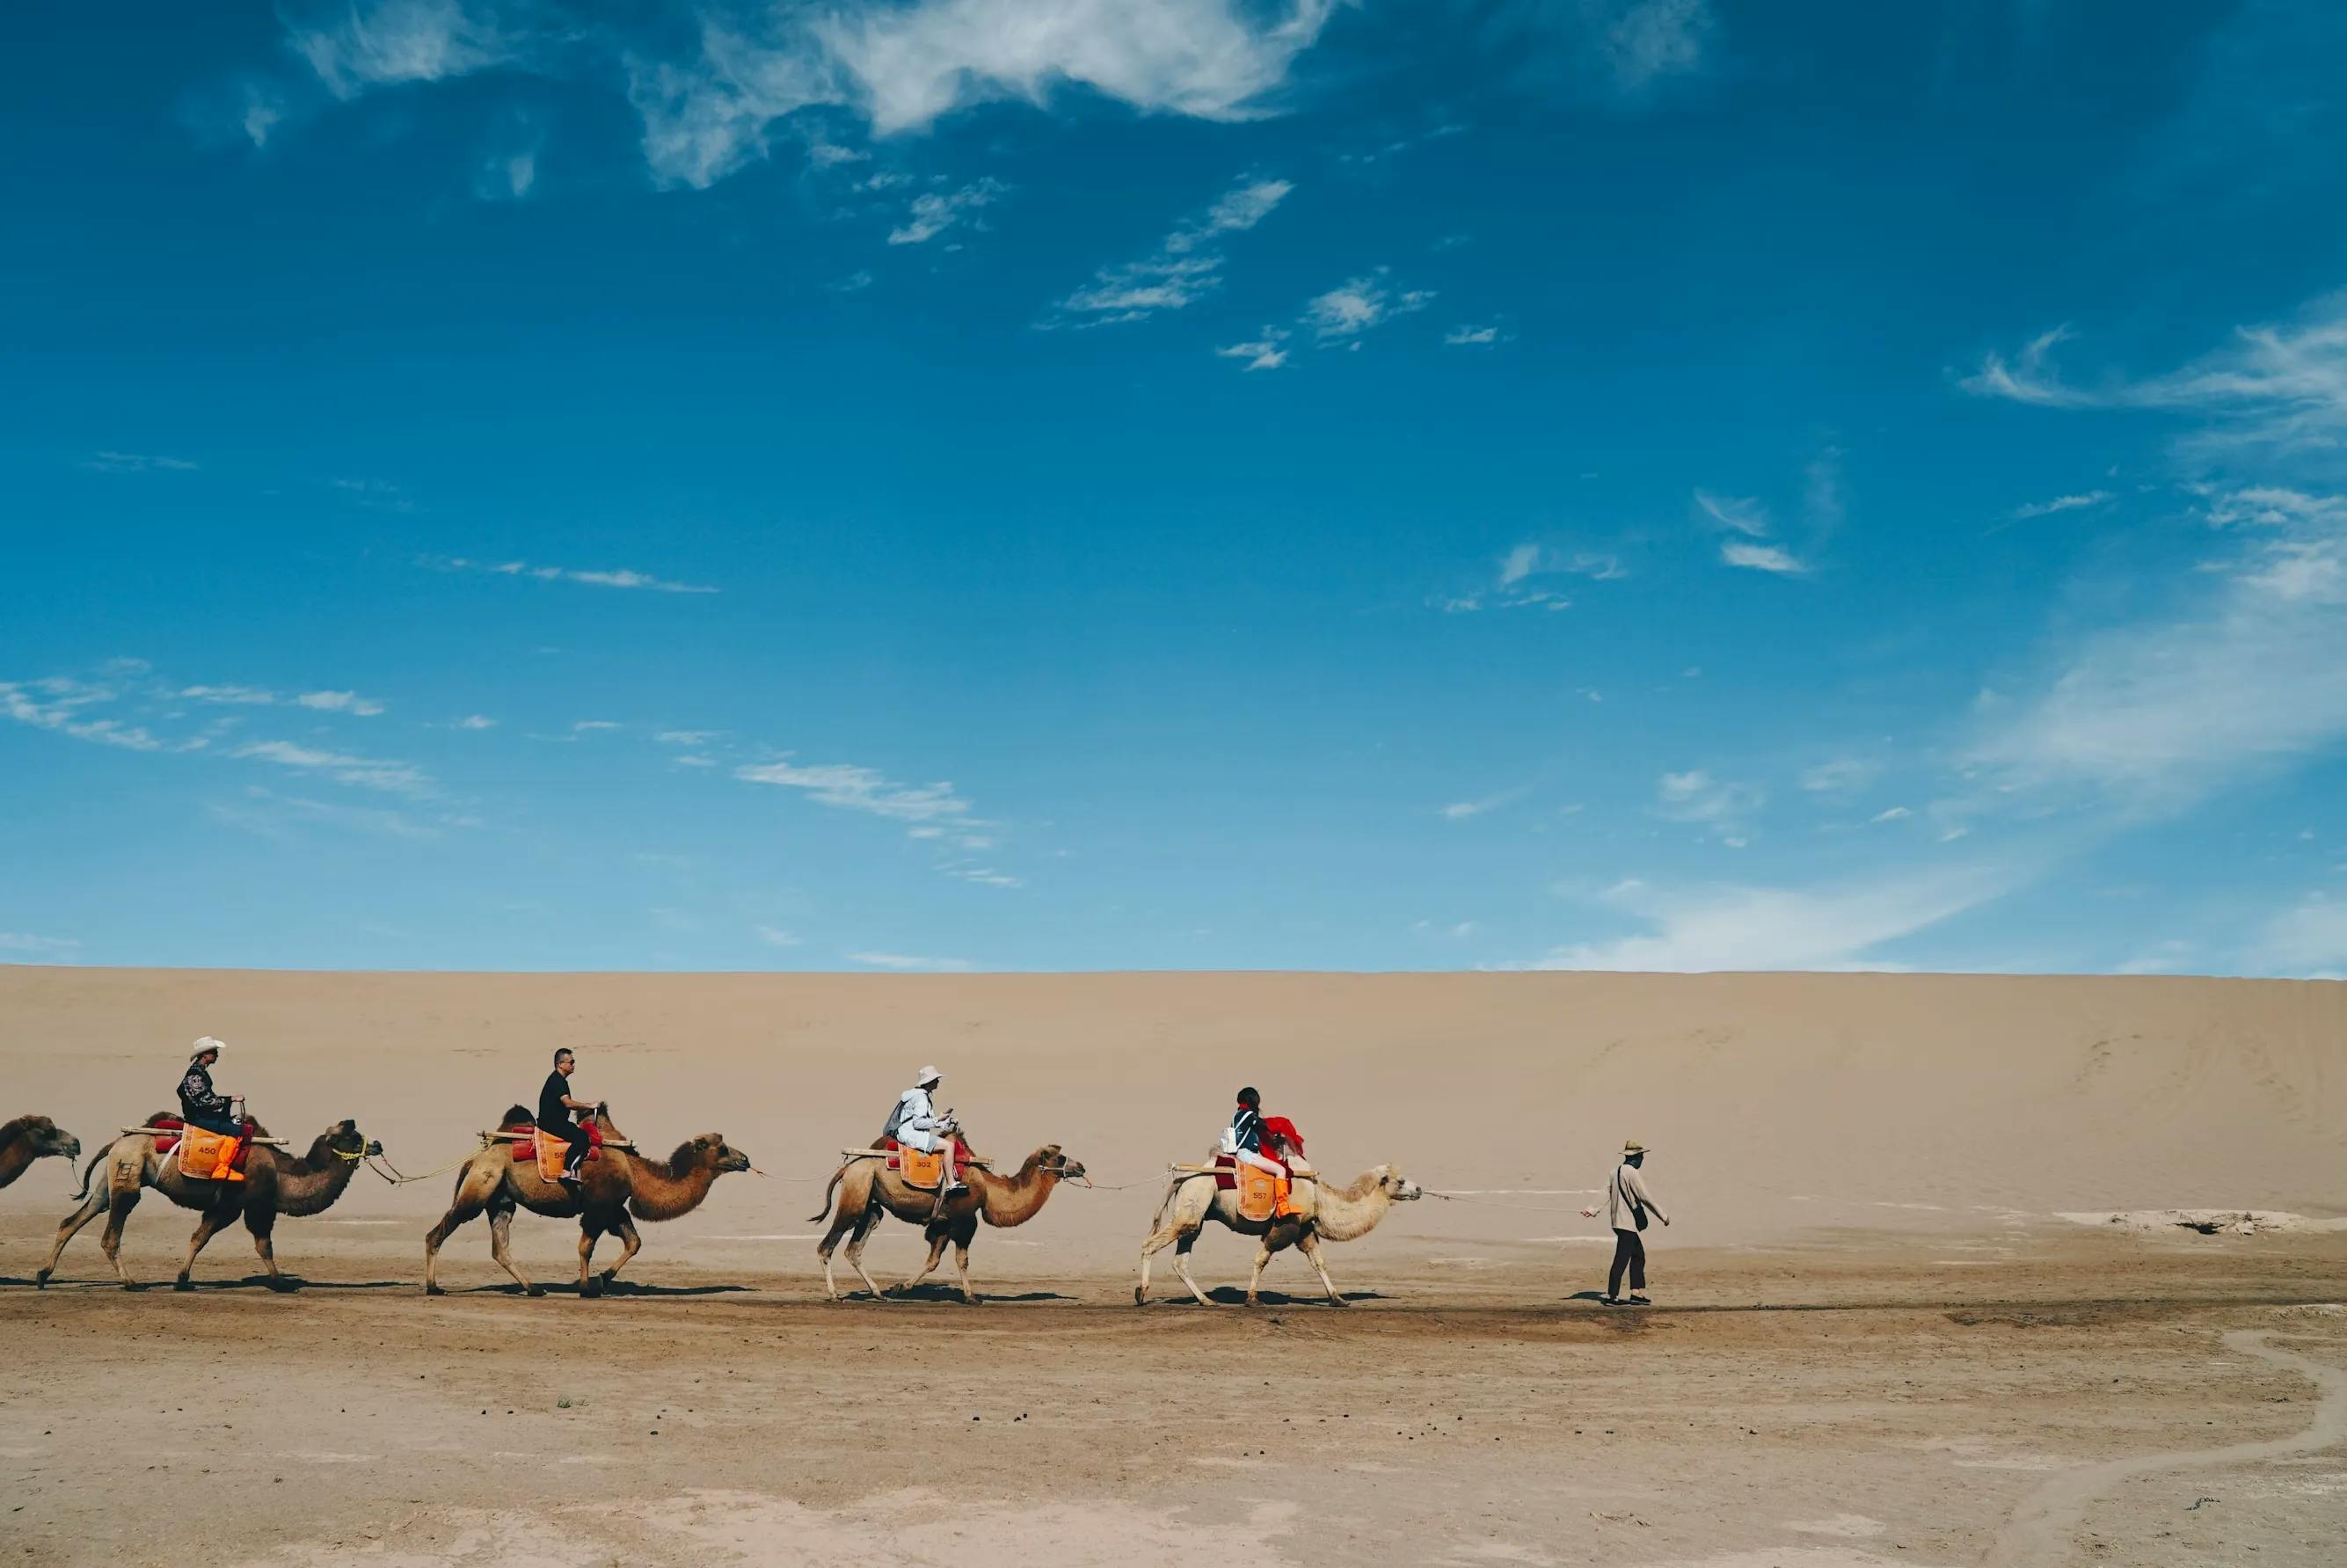 【Every Weekend】Inner Mongolia Grassland + Desert Camel Tour